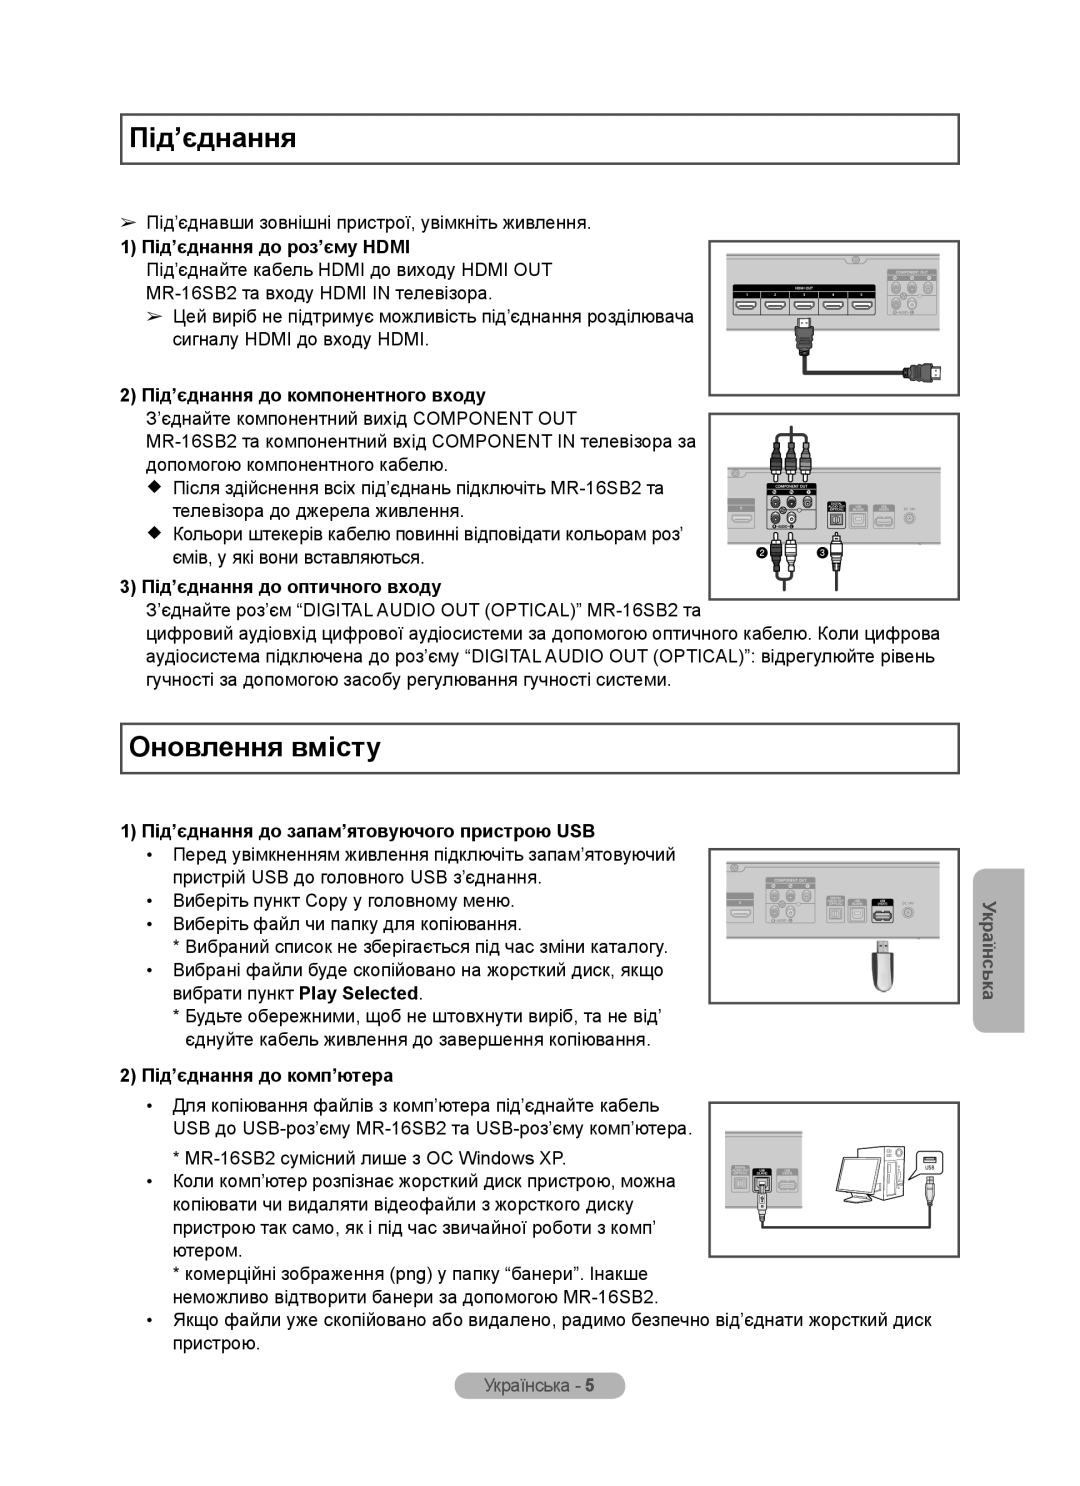 Samsung MR-16SB2 Оновлення вмісту, 1 Під’єднання до роз’єму HDMI, 2 Під’єднання до компонентного входу, Українська 